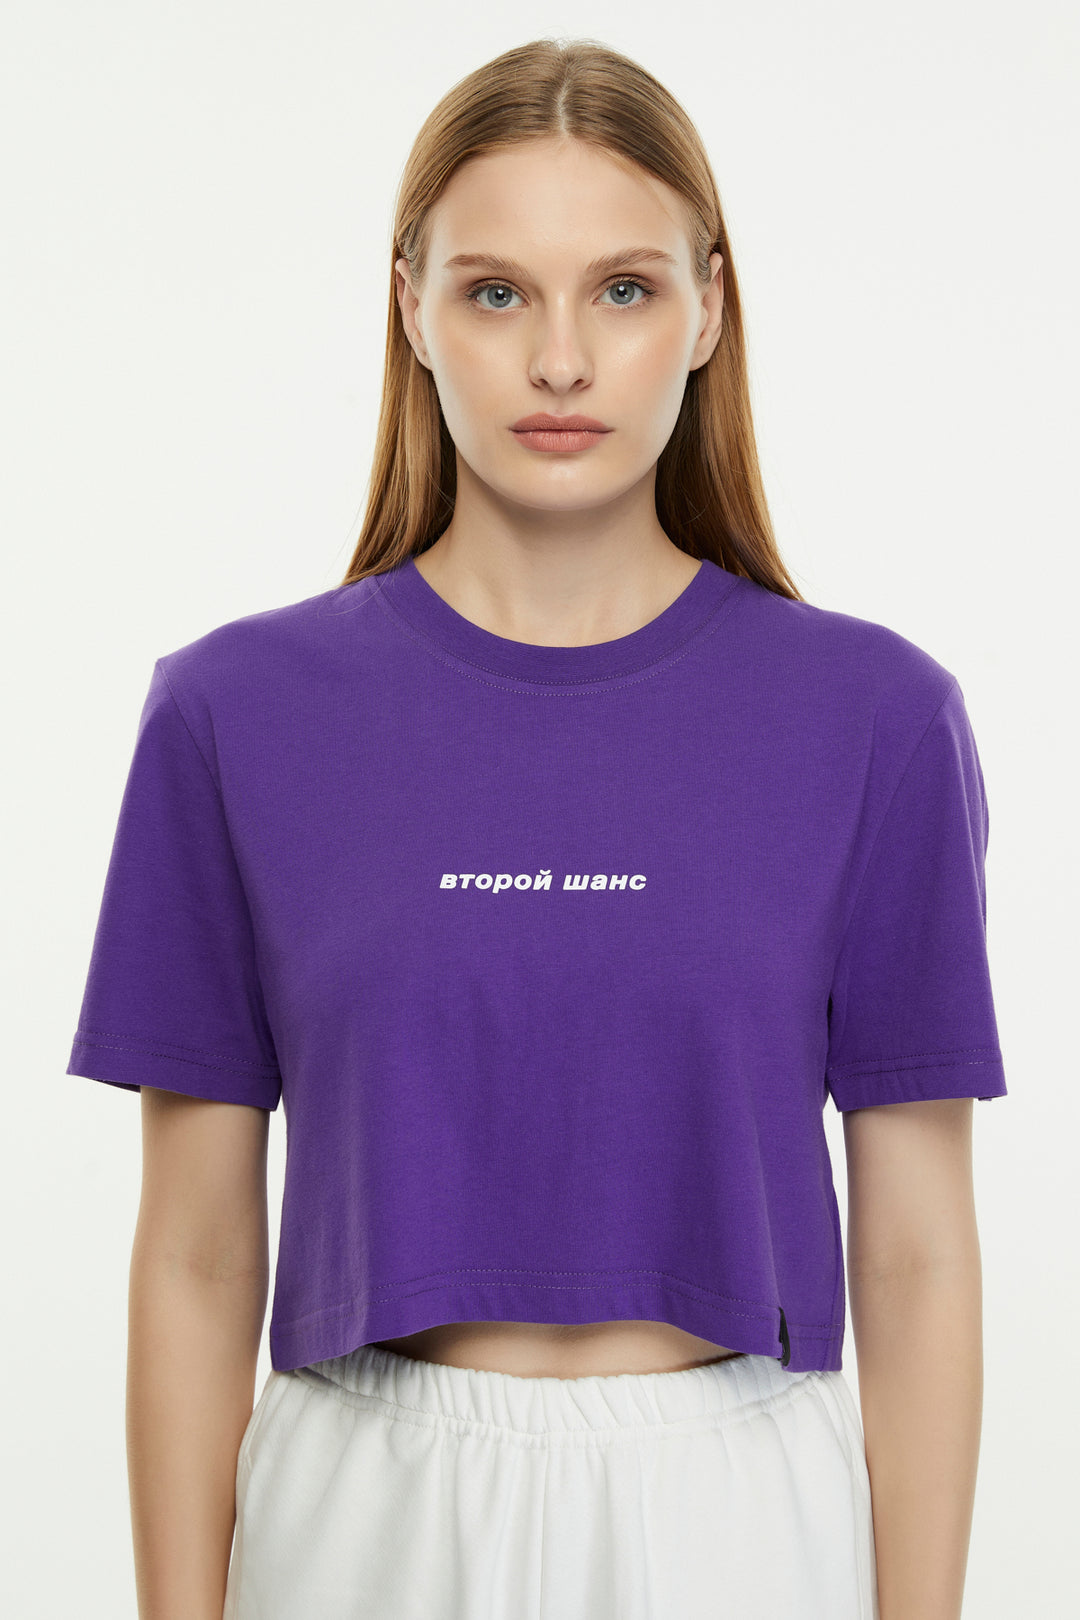 Second Chance / Crop T-shirt